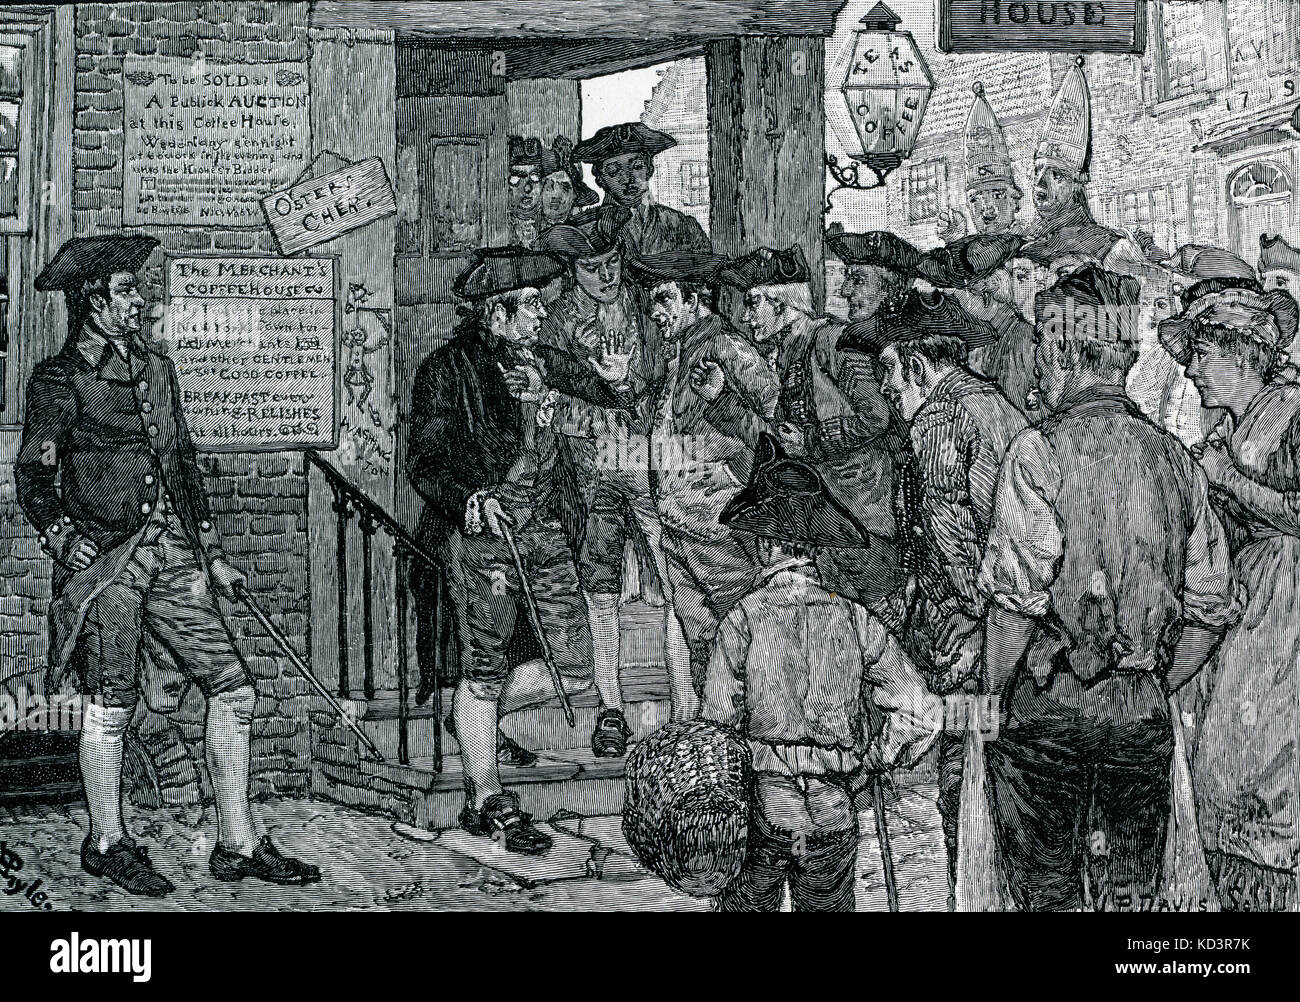 MOB tentant de forcer un agent de timbre à démissionner, Boston, protestant contre la Loi sur le Timbre de 1765, Révolution américaine. Illustration de Howard Pyle, 1908 Banque D'Images